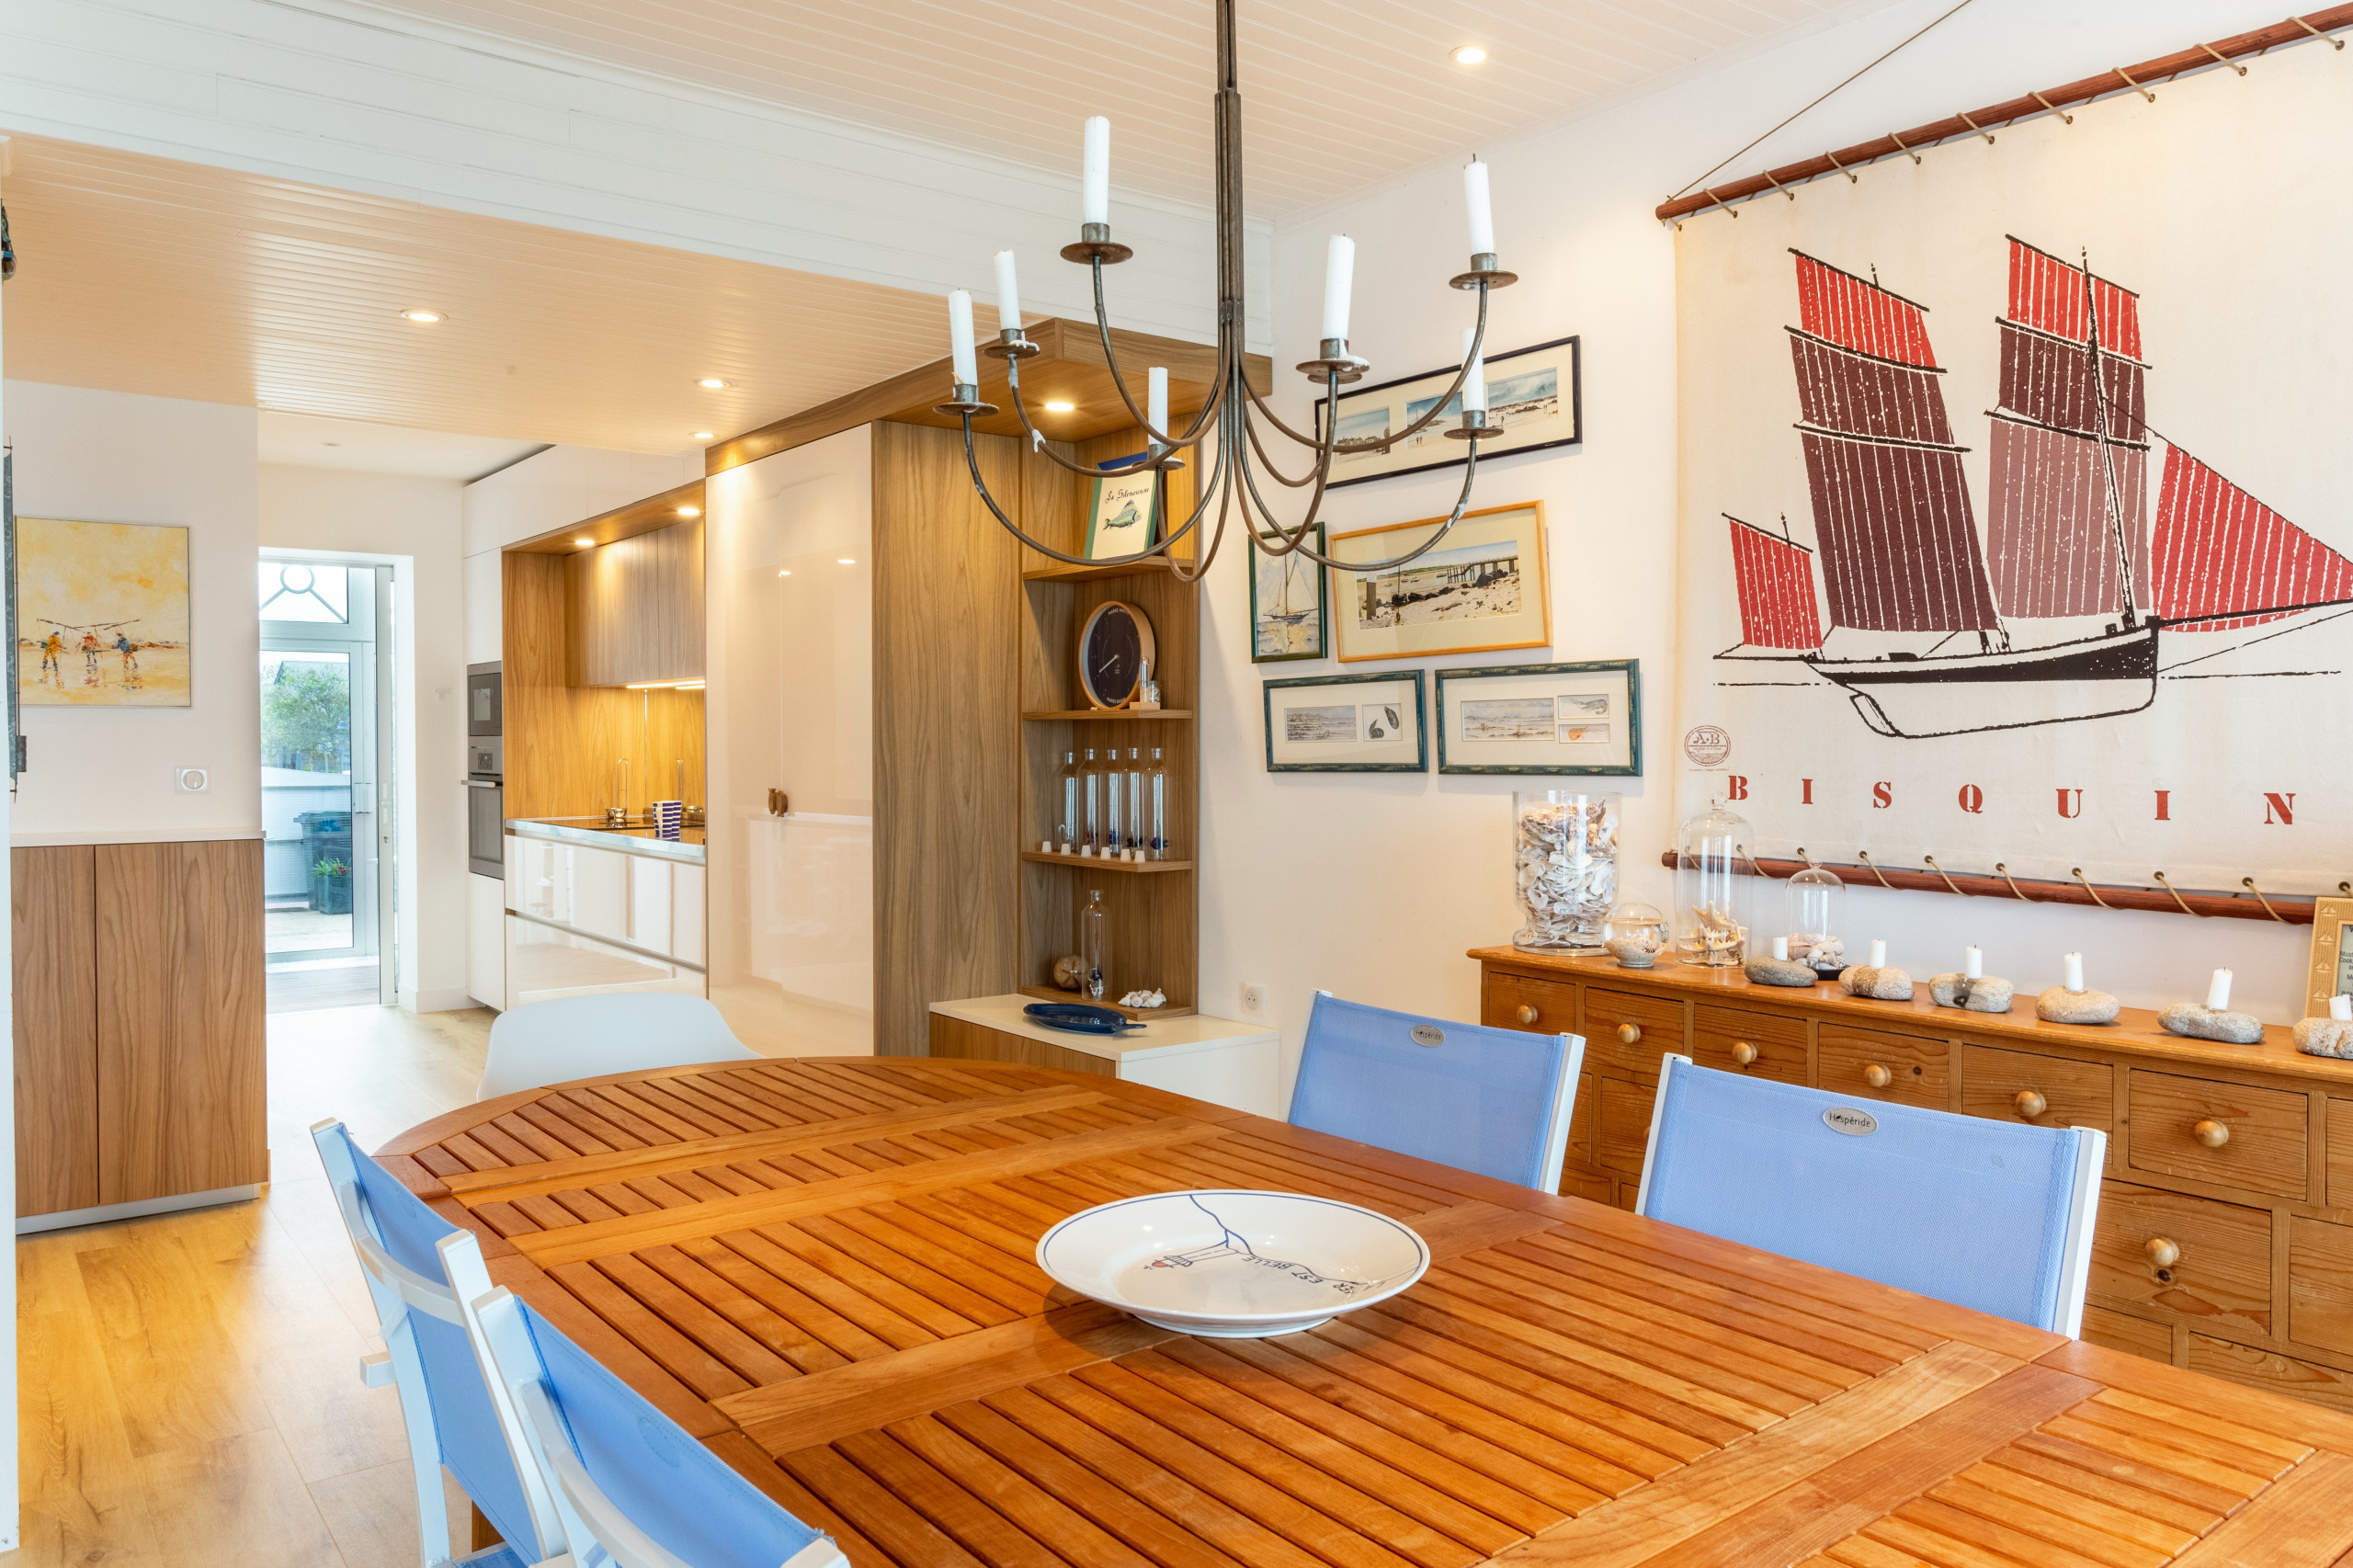 Aménagement d'une cuisine "couloir" dans une villa en bord de mer